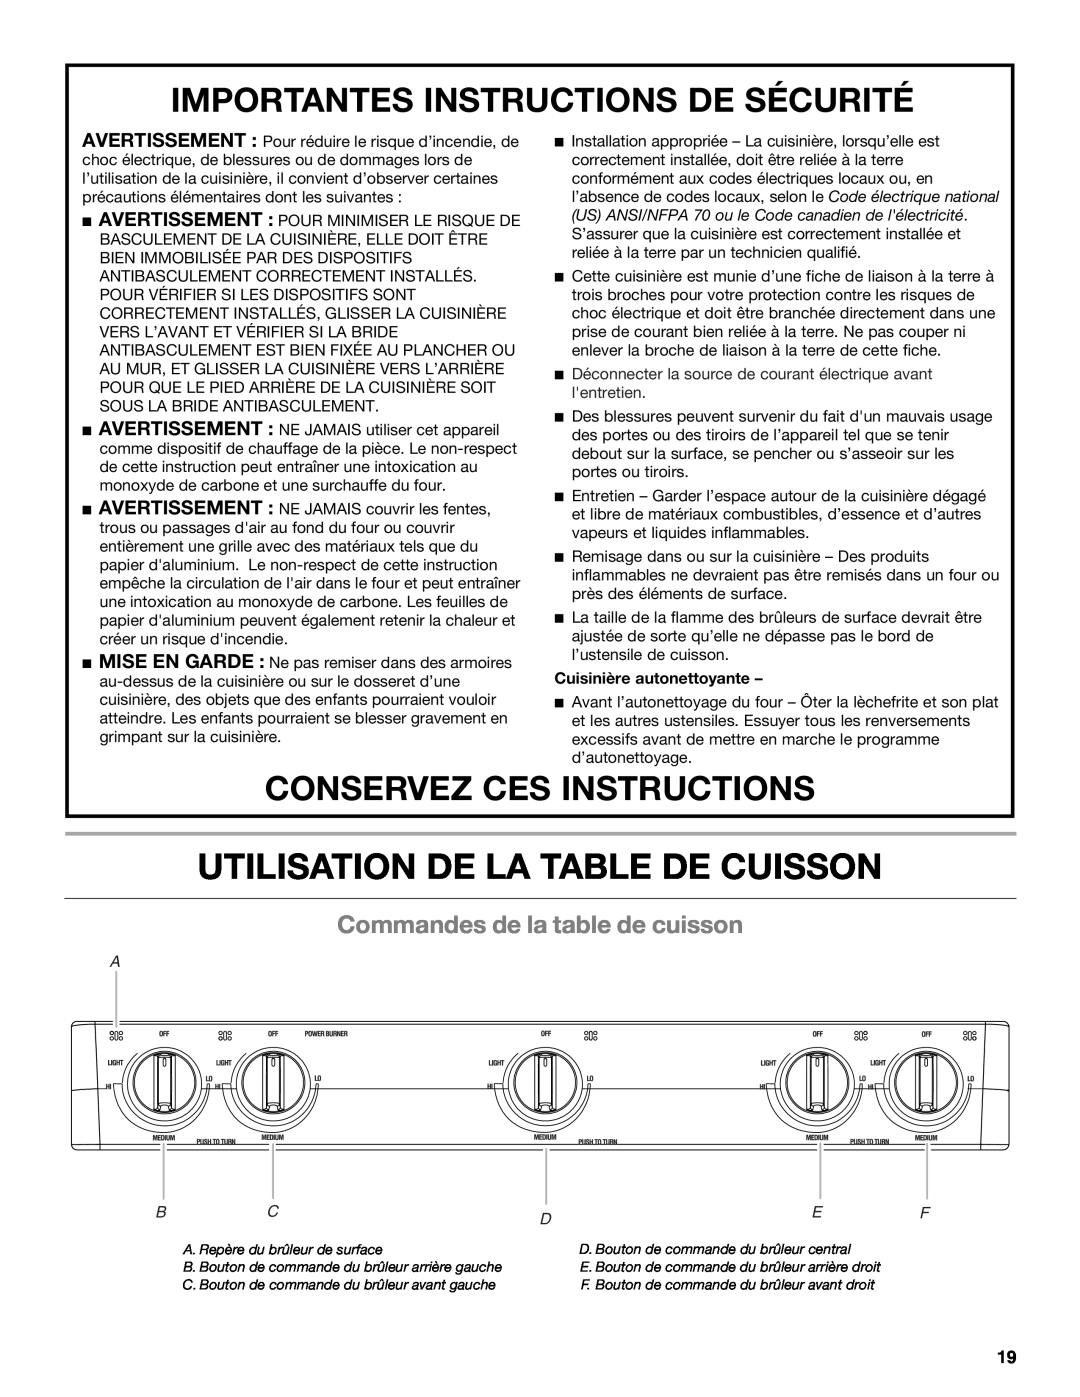 Whirlpool WFG231LVS manual Utilisation De La Table De Cuisson, Commandes de la table de cuisson, Conservez Ces Instructions 